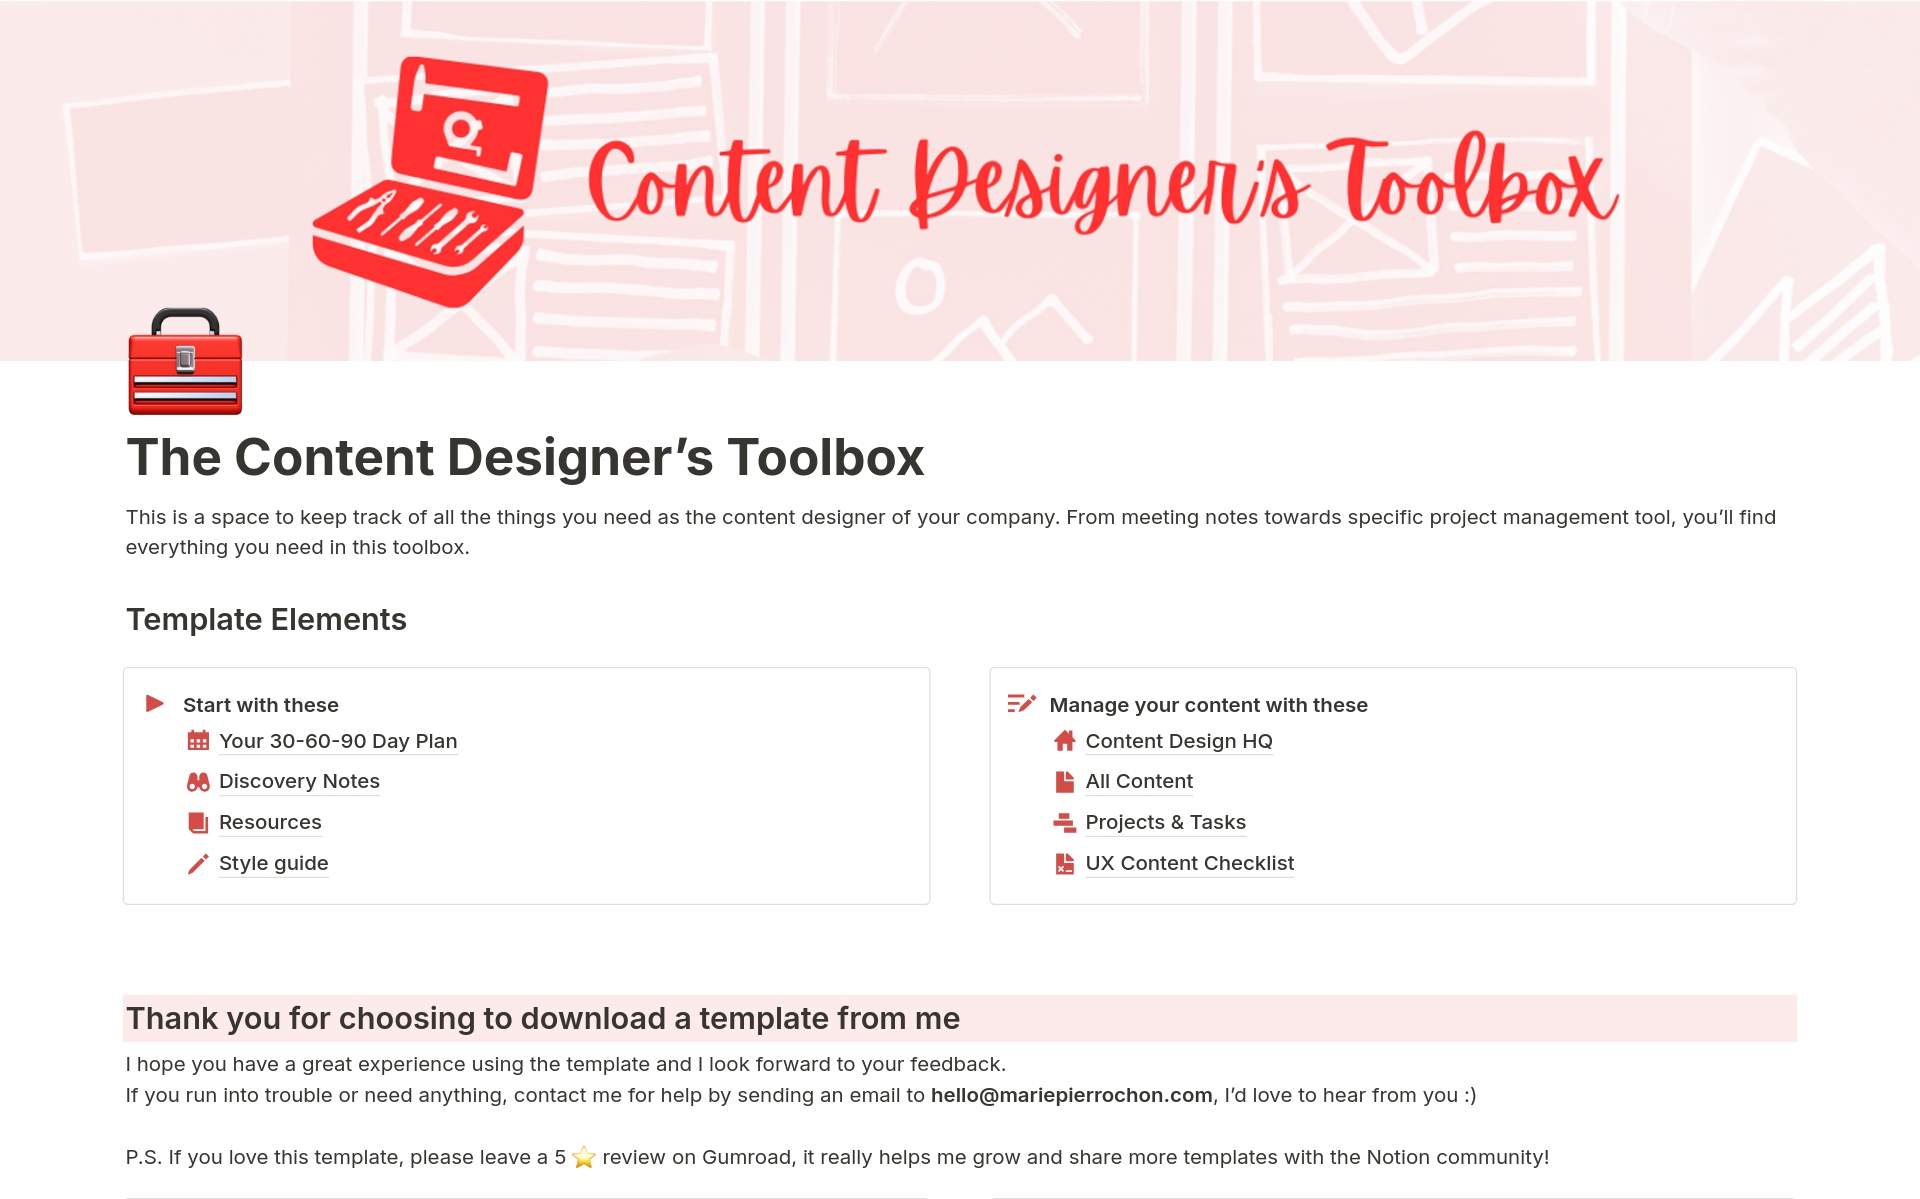 Vista previa de una plantilla para Content Designer's Toolbox